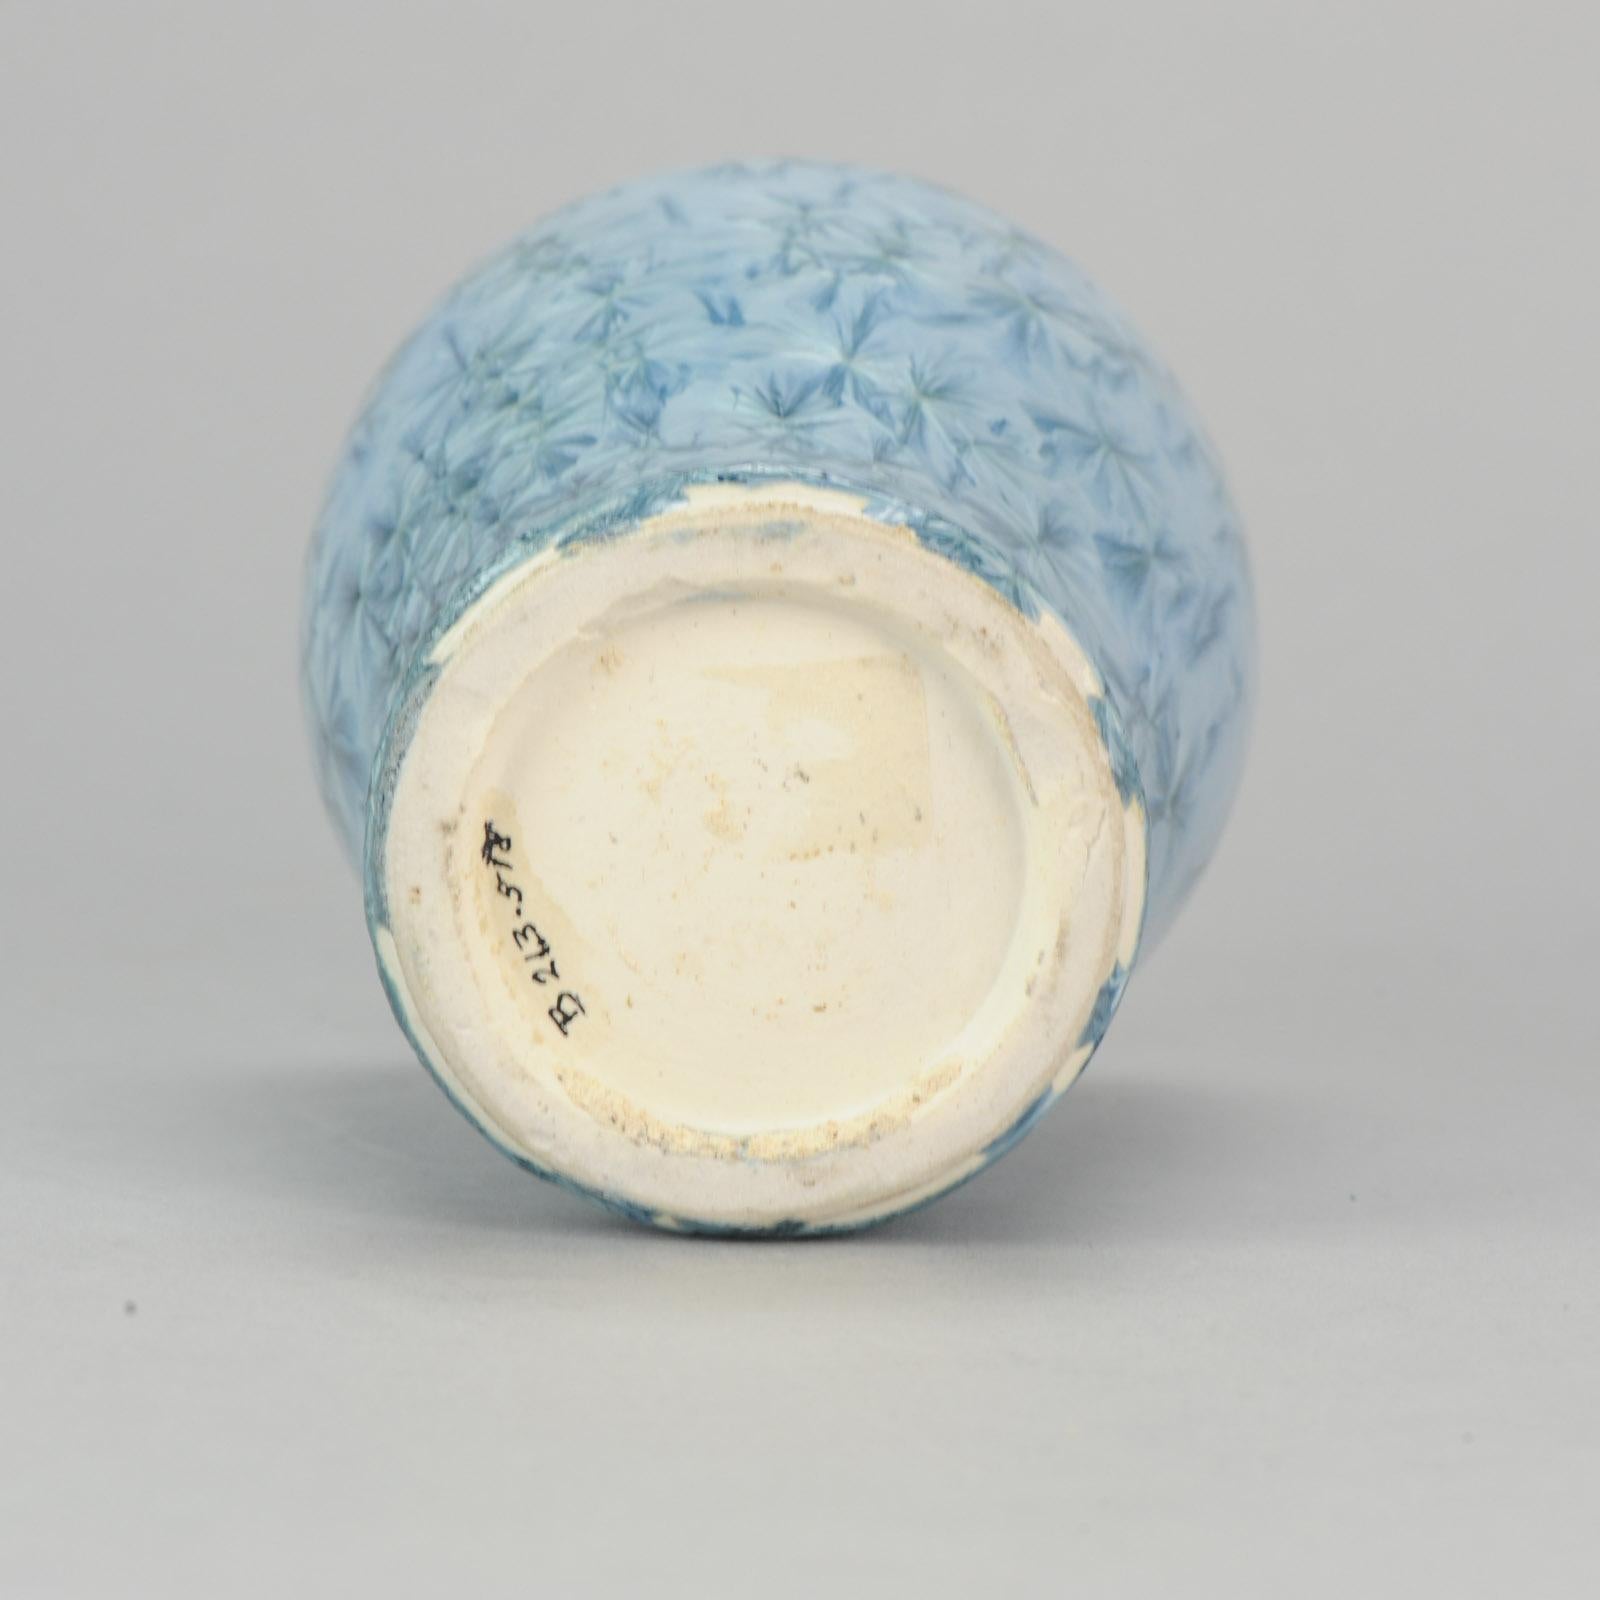 Shiwan 20th Century PRoC 1970-1980 Chinese Porcelain Vase Crystalline Glaz 7